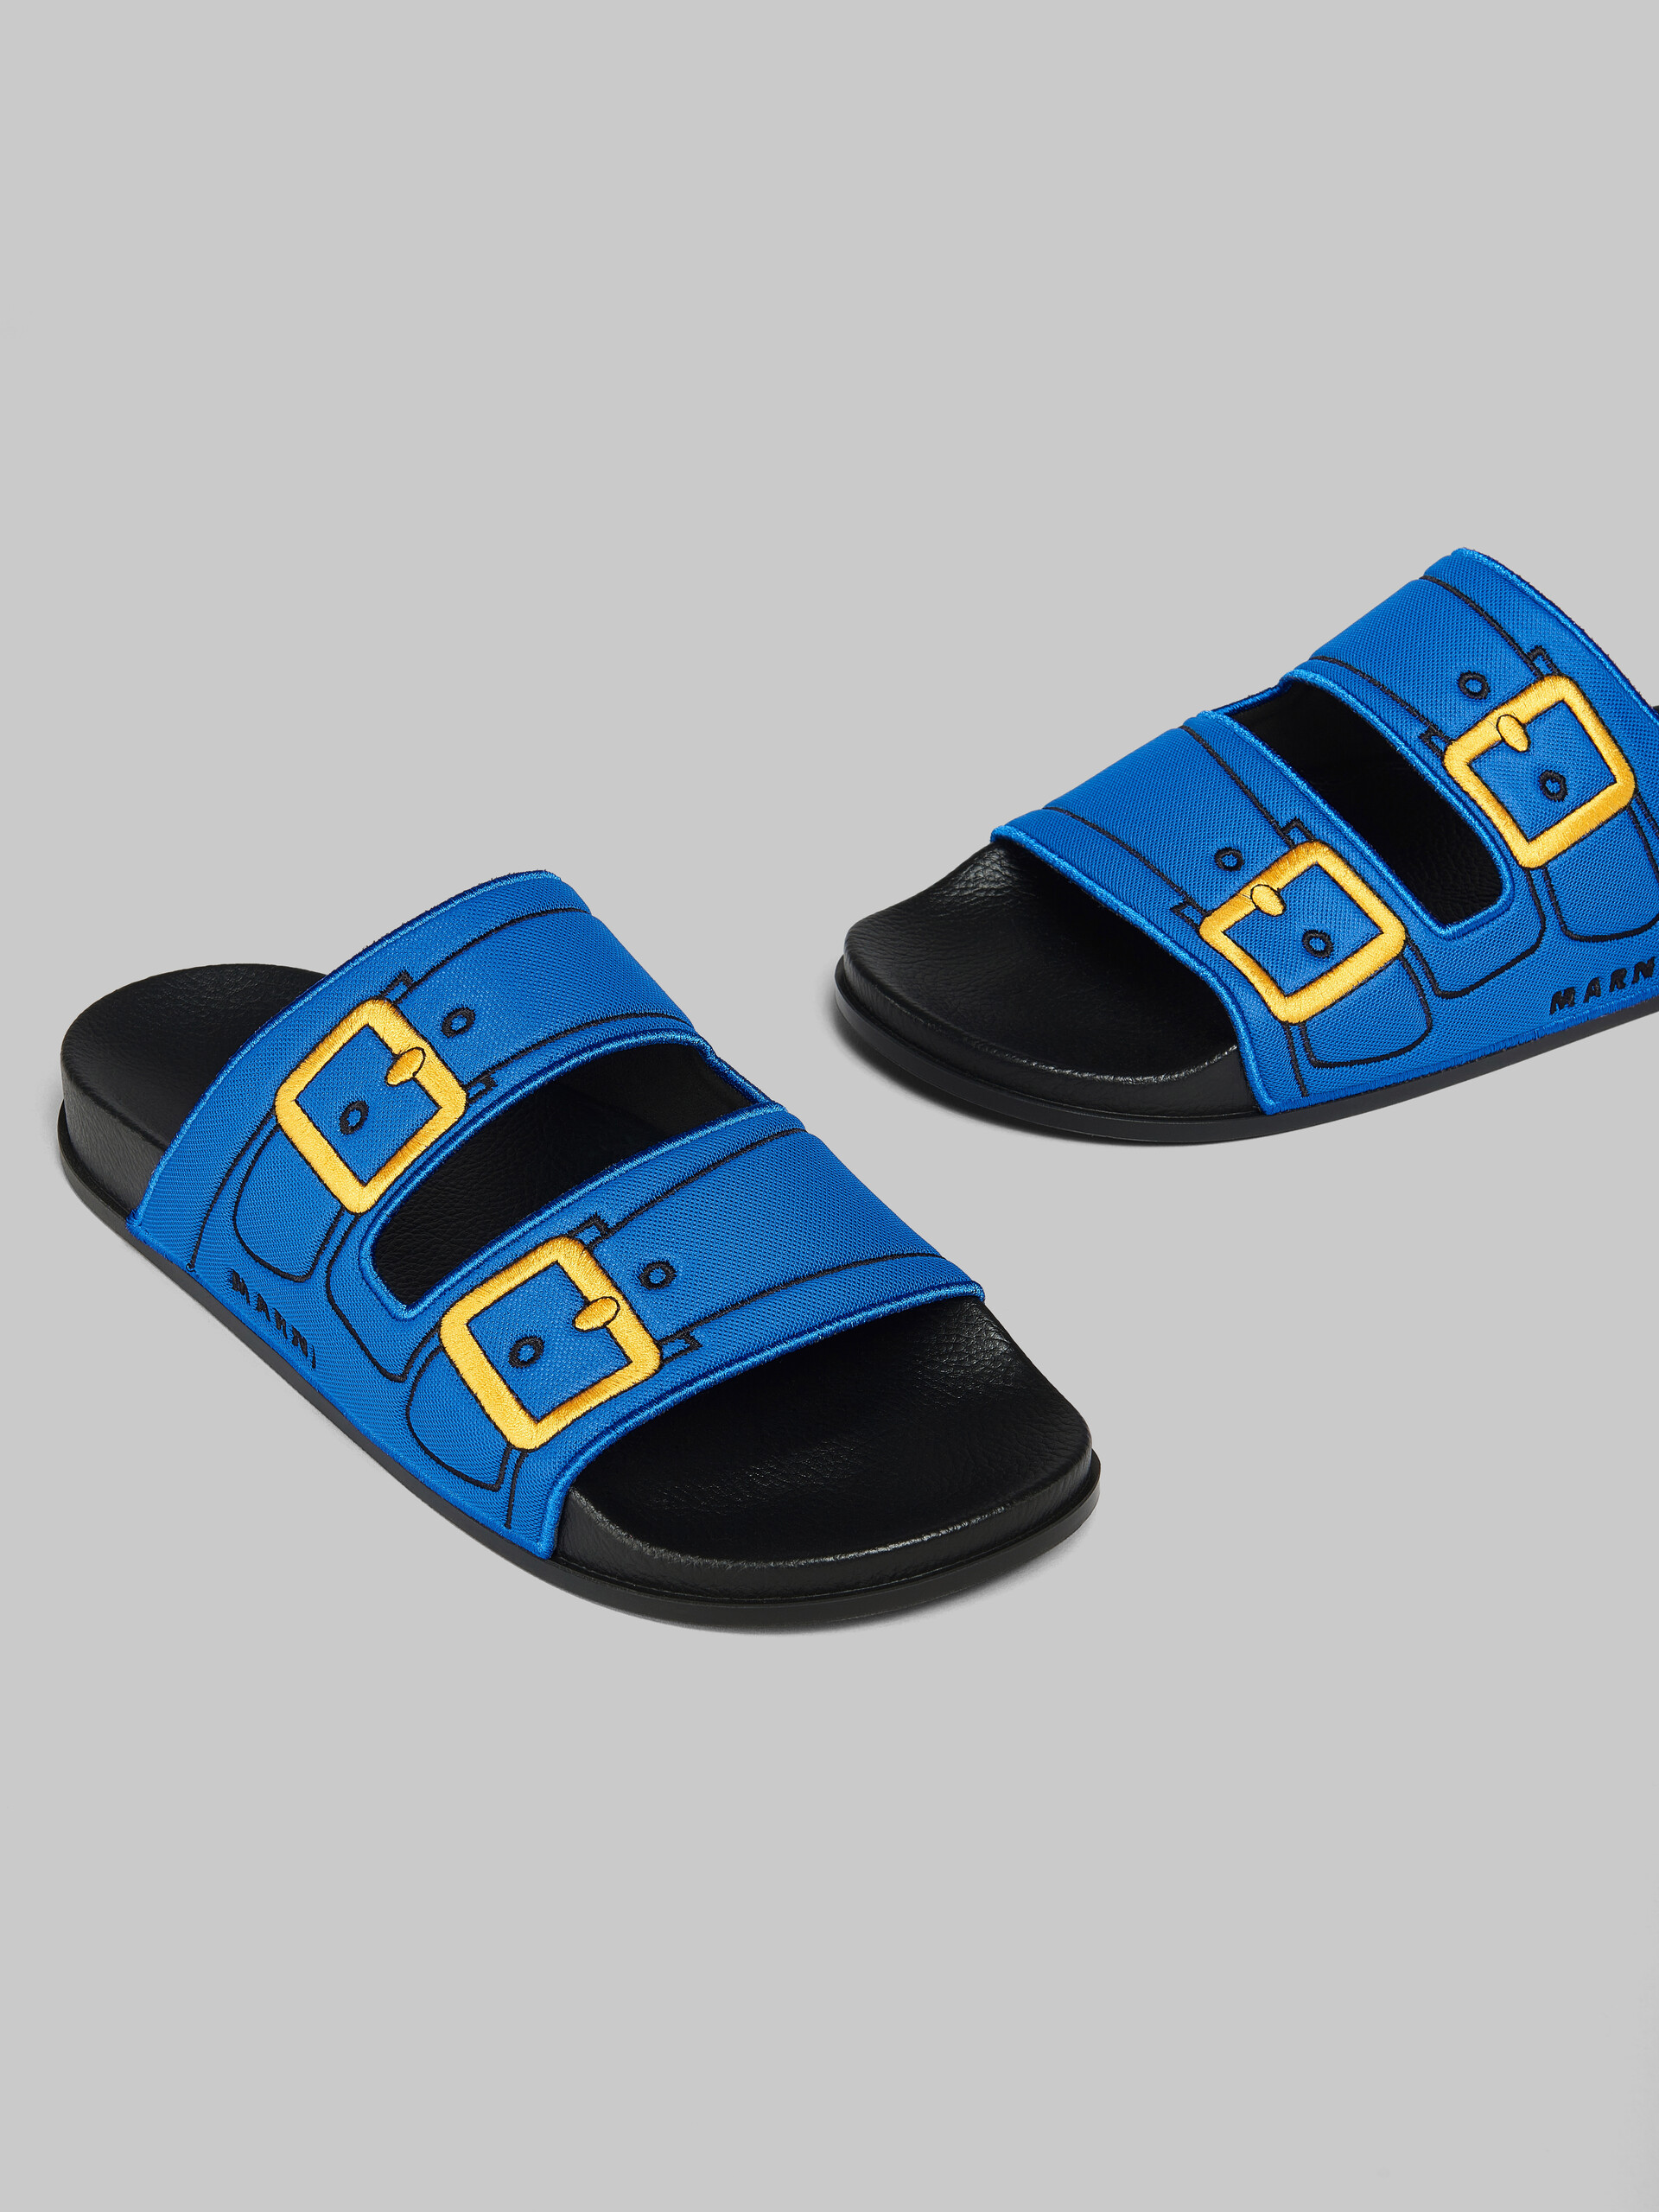 Sandalia efecto trampantojo azul con hebillas bordadas - Sandalias - Image 5